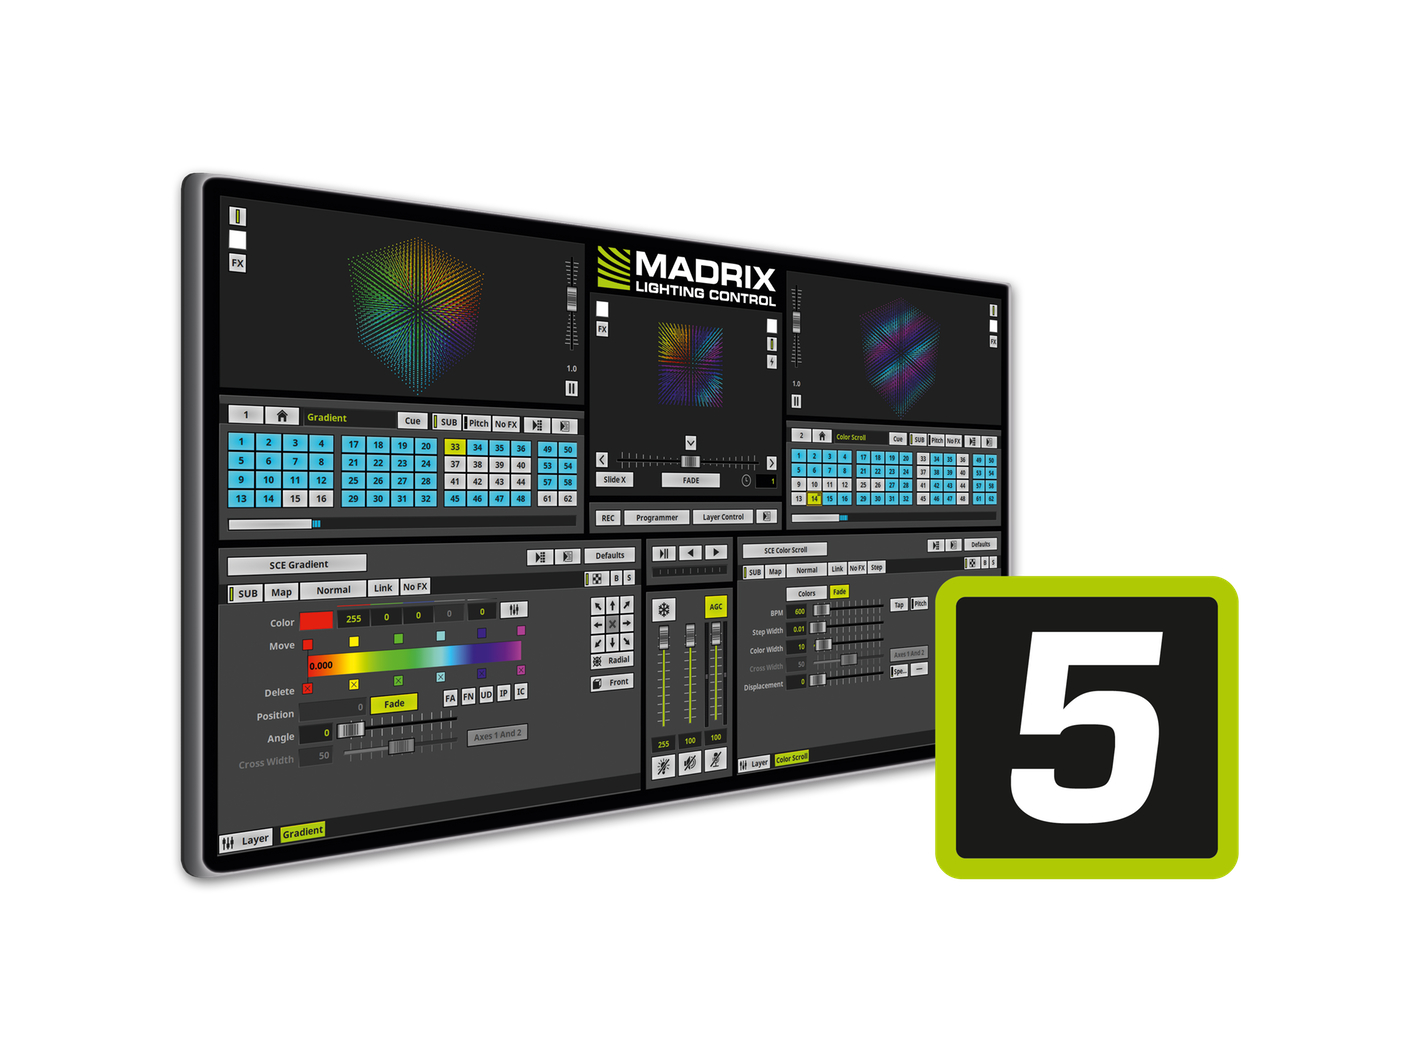 MADRIX Software 5 Lizenz maximum